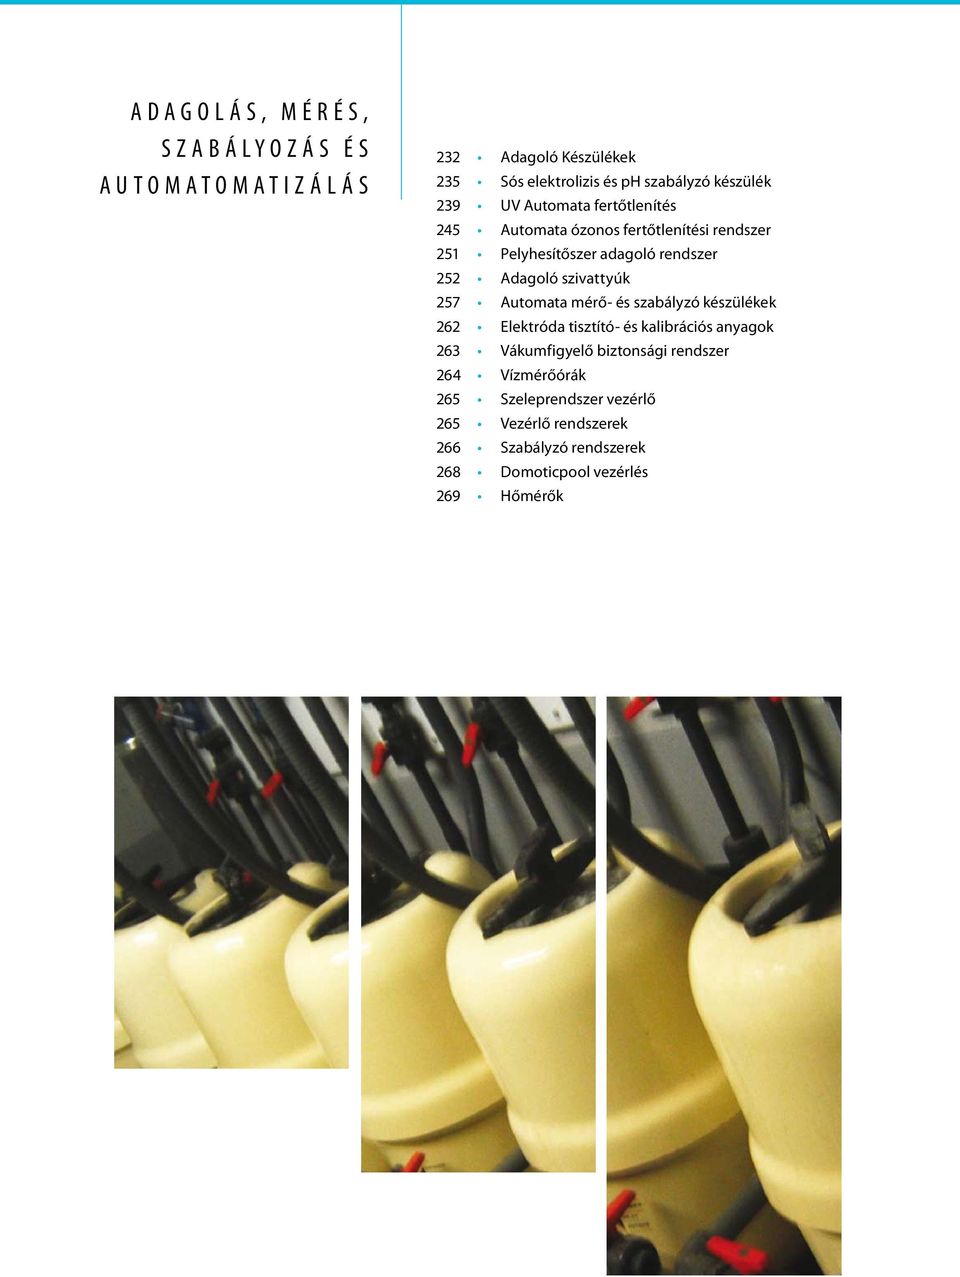 Adagoló szivattyúk 257 Automata mérő- és szabályzó készülékek 262 Elektróda tisztító- és kalibrációs anyagok 263 Vákumfigyelő